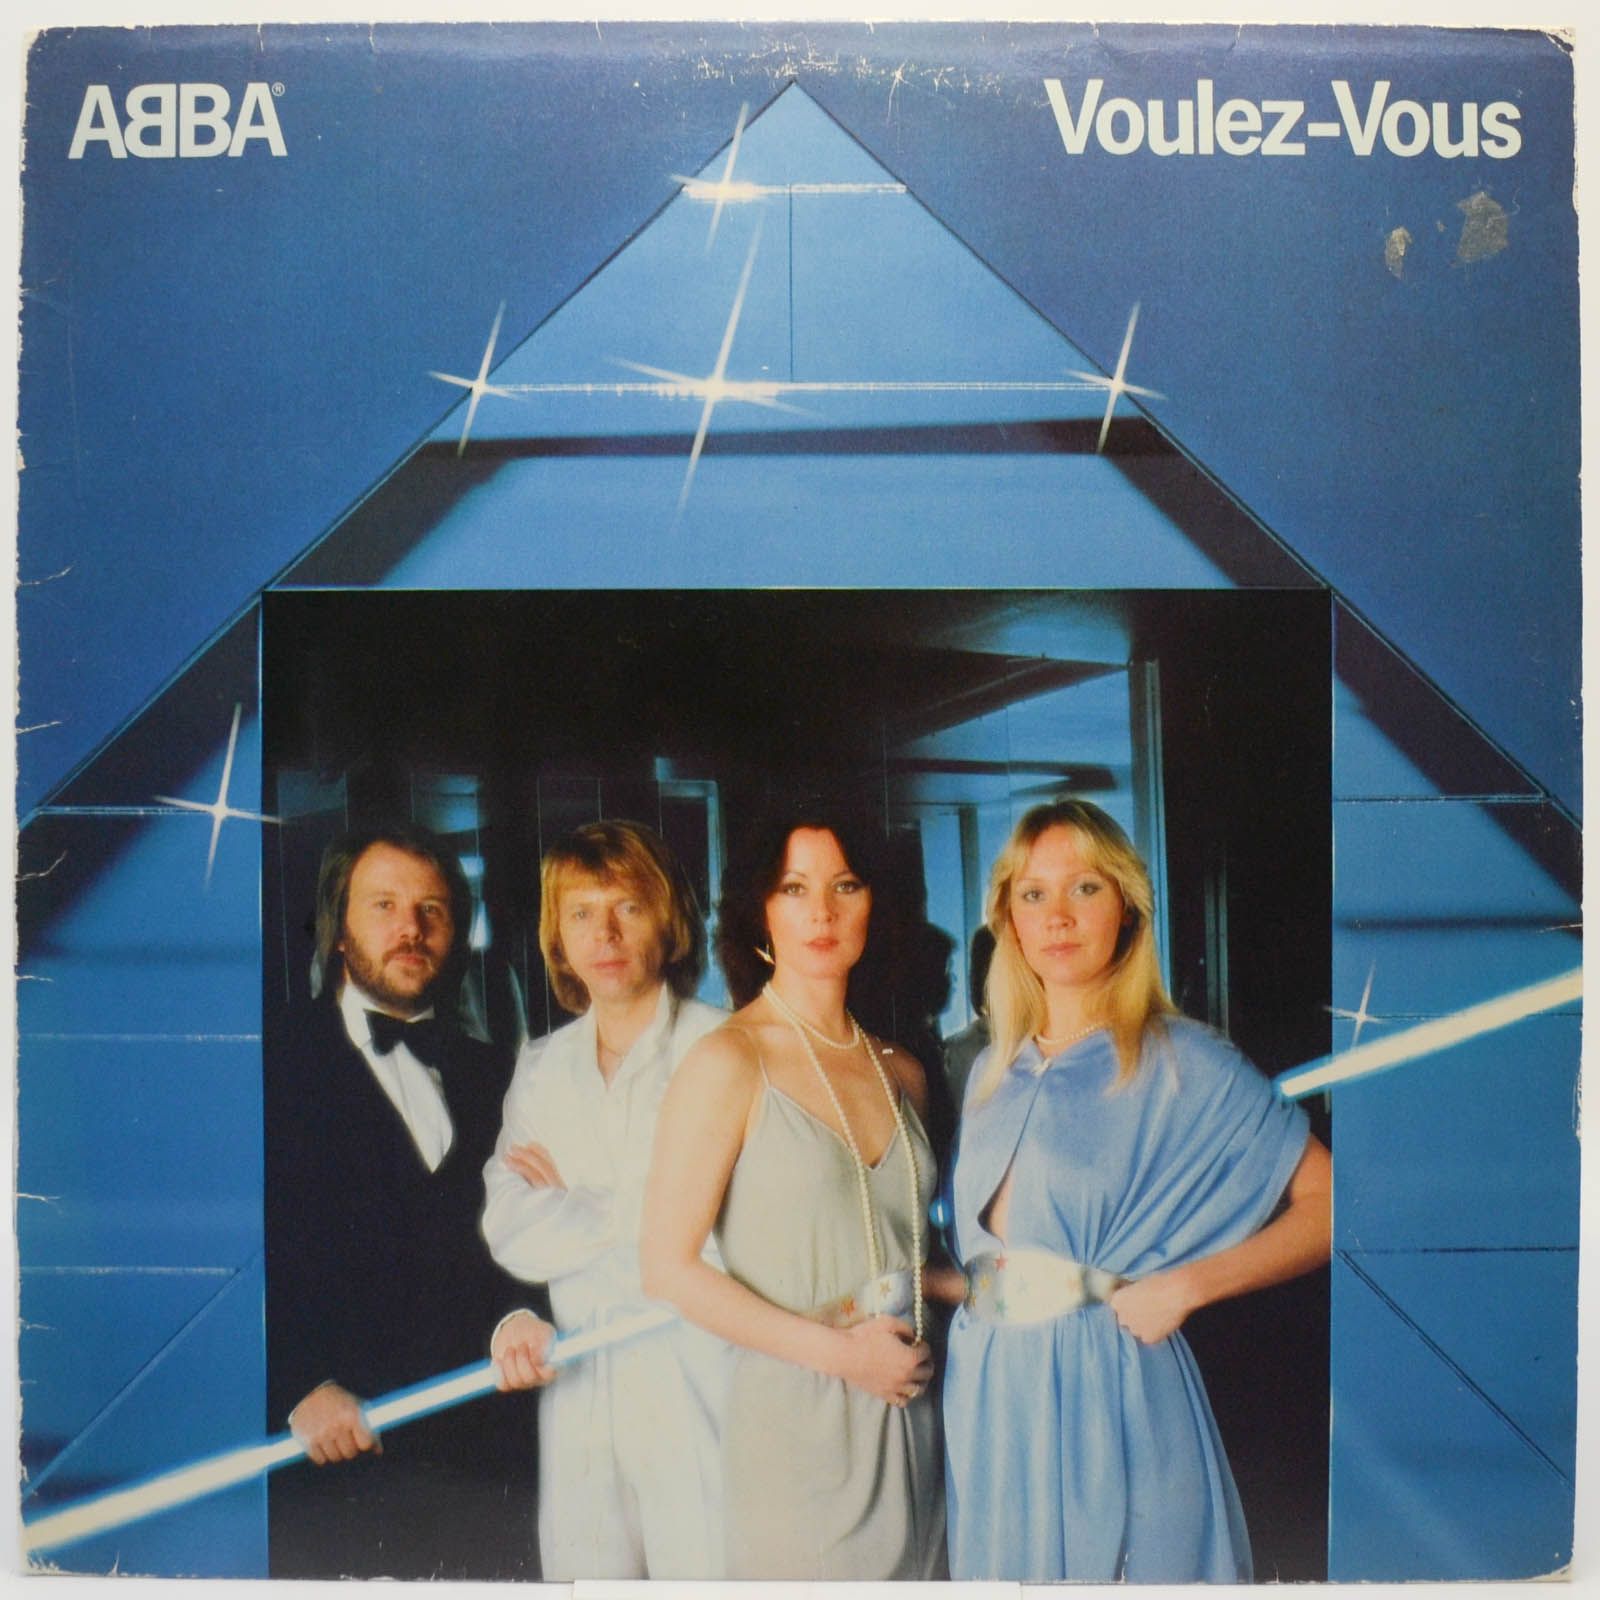 ABBA — Voulez-Vous (1-st, Sweden), 1979